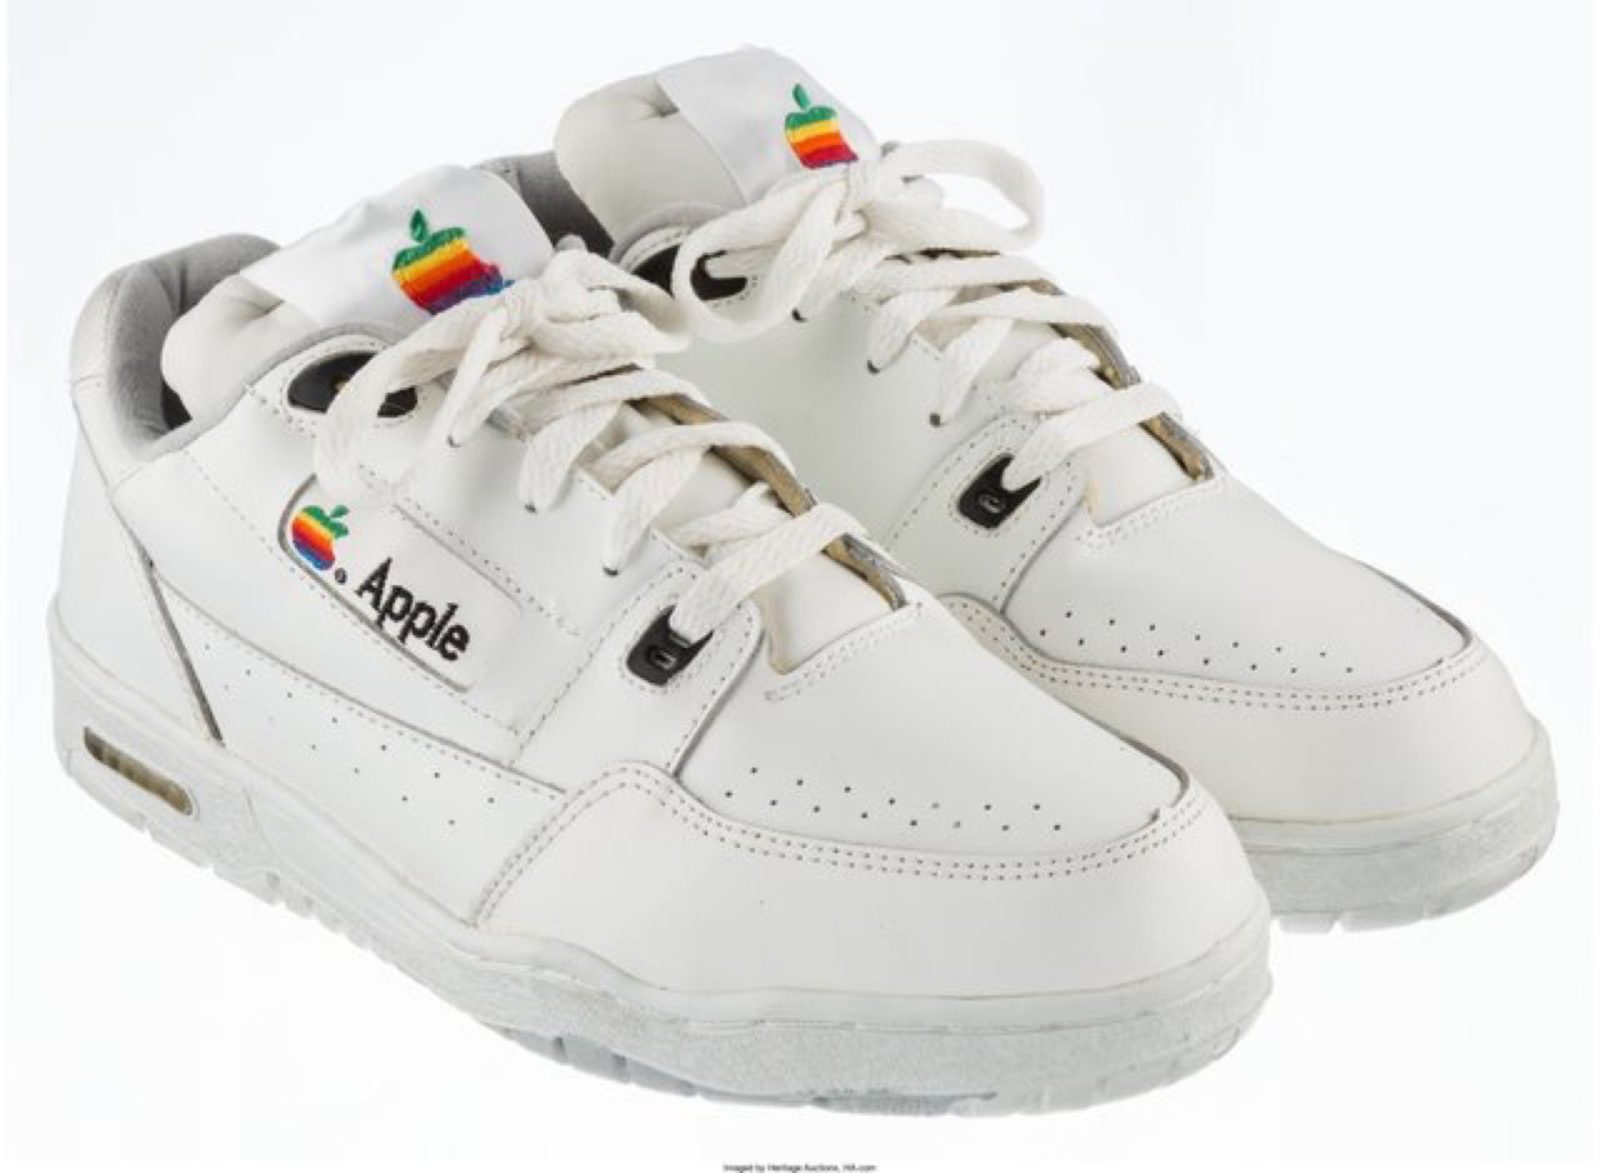 scarpe Apple foto - scarpe apple per i dipendenti negli anni '90 in collaborazione con Nike